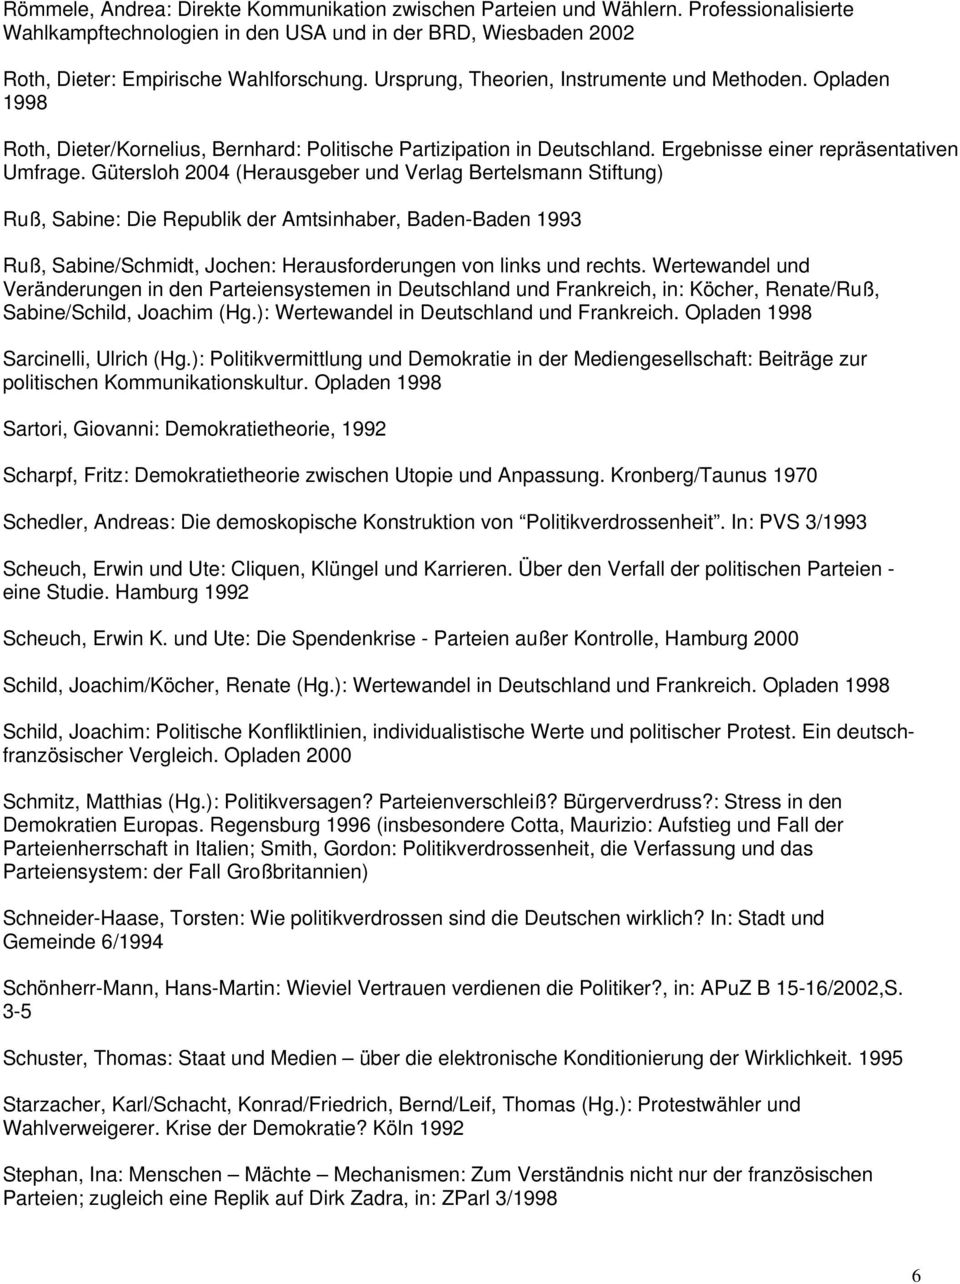 Gütersloh 2004 (Herausgeber und Verlag Bertelsmann Stiftung) Ruß, Sabine: Die Republik der Amtsinhaber, Baden-Baden 1993 Ruß, Sabine/Schmidt, Jochen: Herausforderungen von links und rechts.